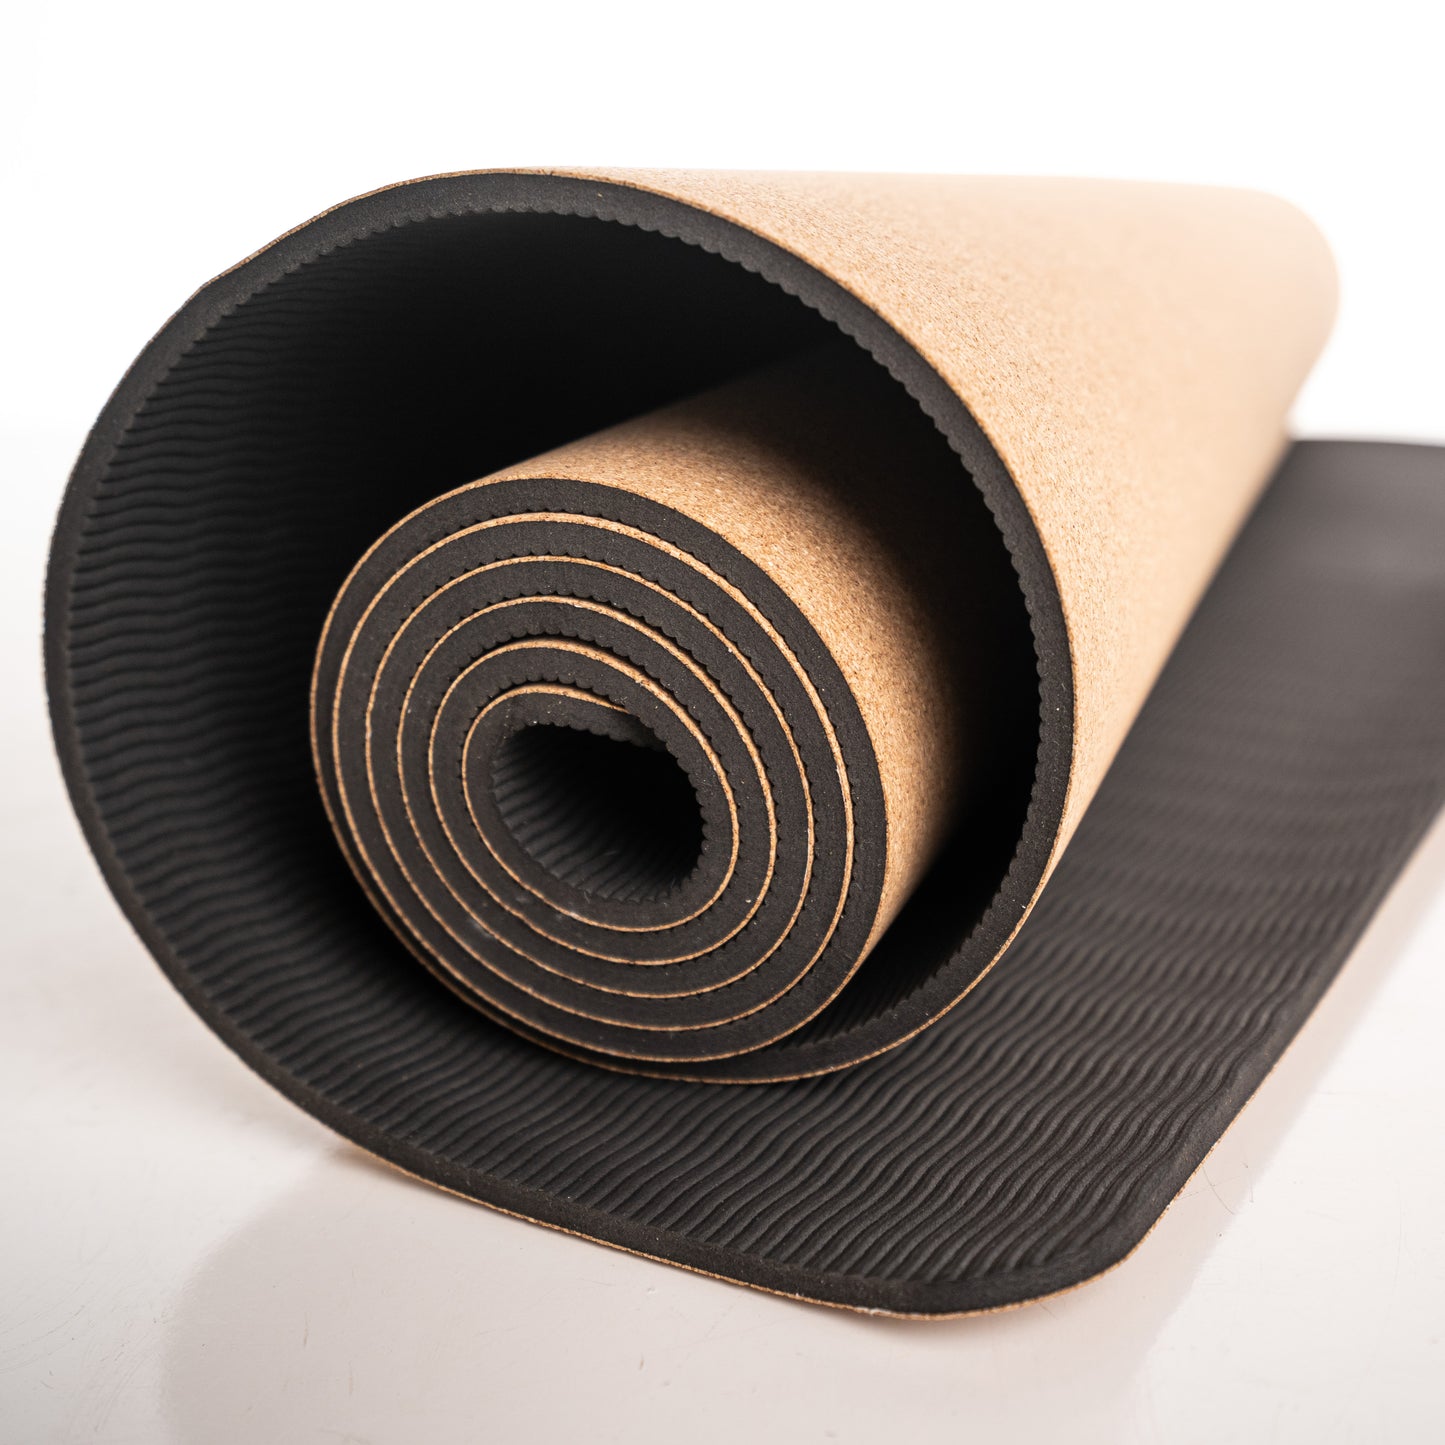 Cork Yoga Mat - Best Non-Slip Wide Yoga Mat